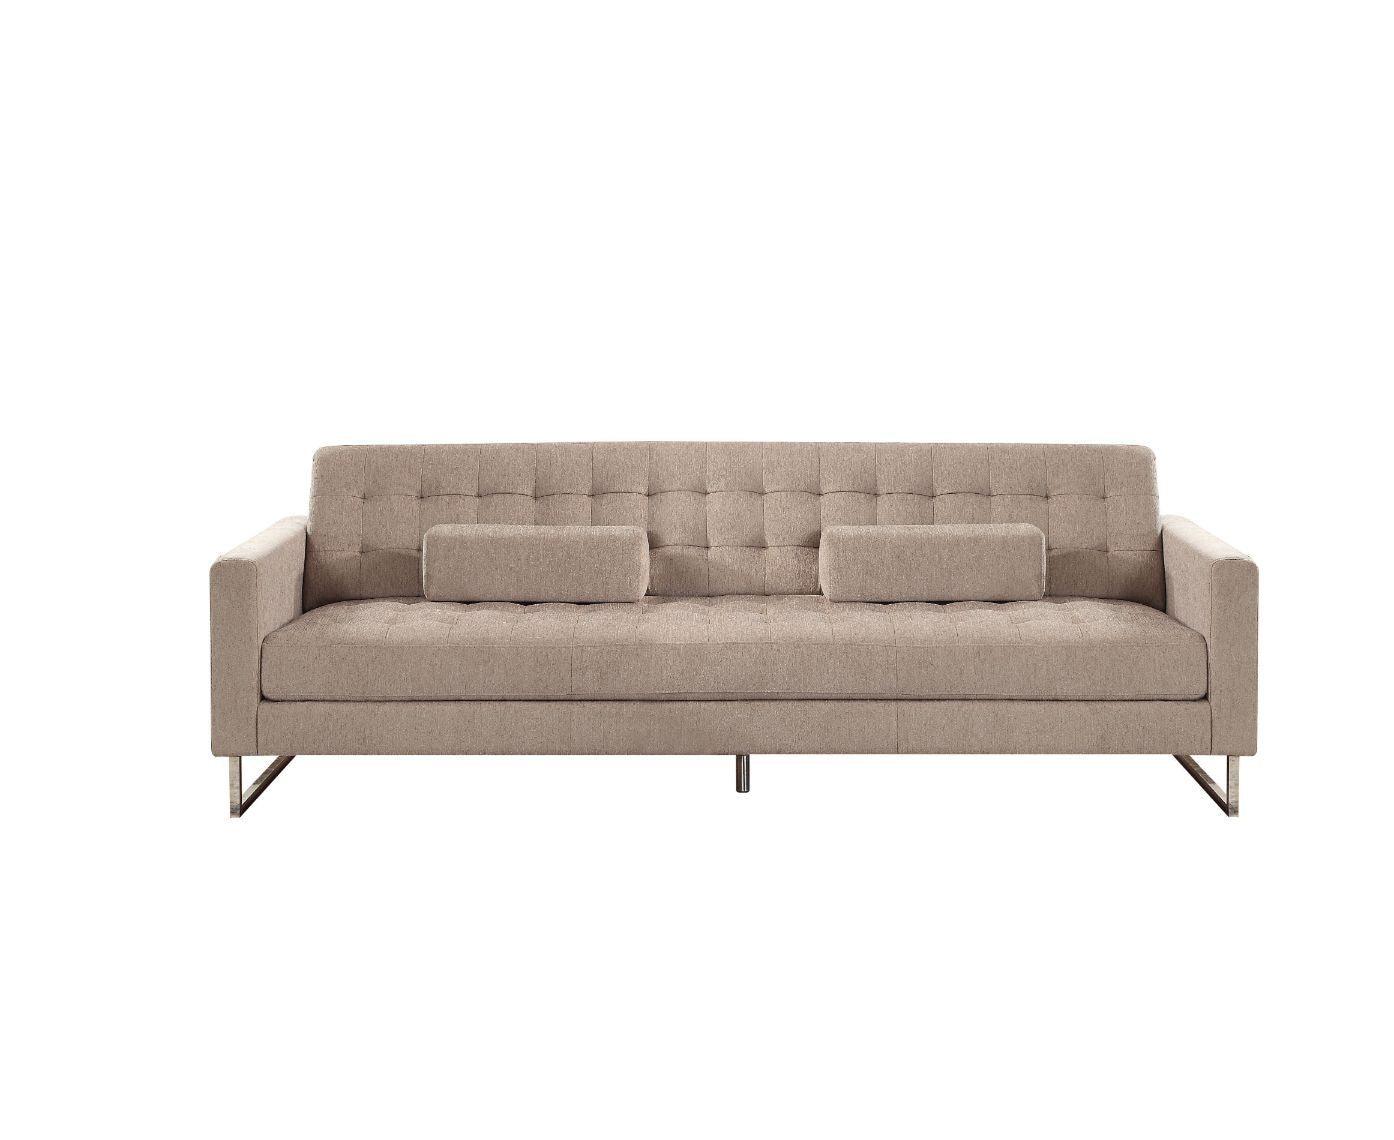 ACME - Sampson - Sofa - Beige Fabric - 5th Avenue Furniture